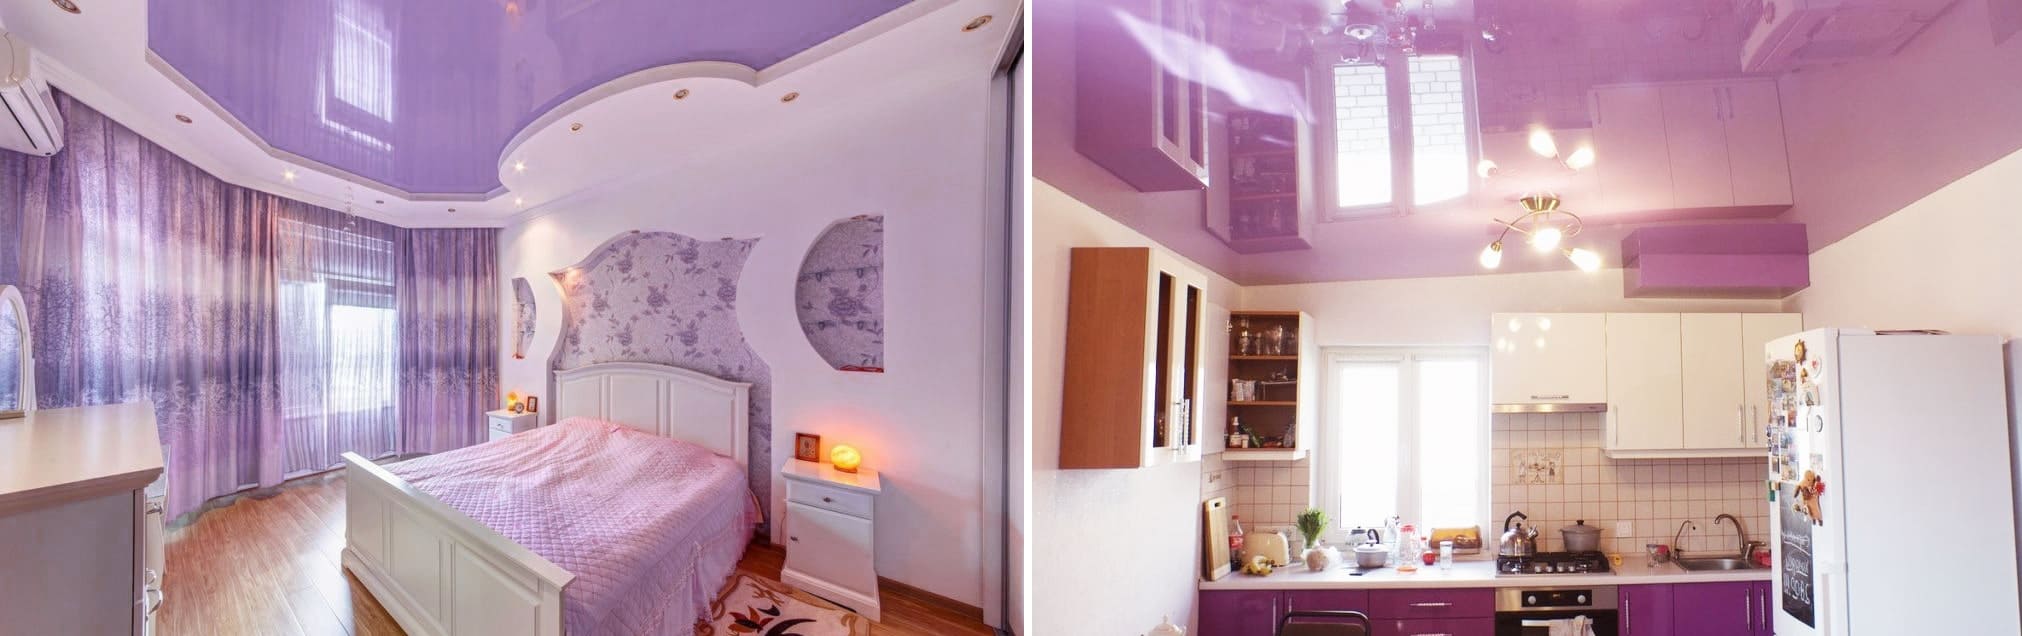 Сиреневый натяжной потолок в дизайне интерьера на кухне и в спальне. Профессиональный монтаж от специалистов Alezi